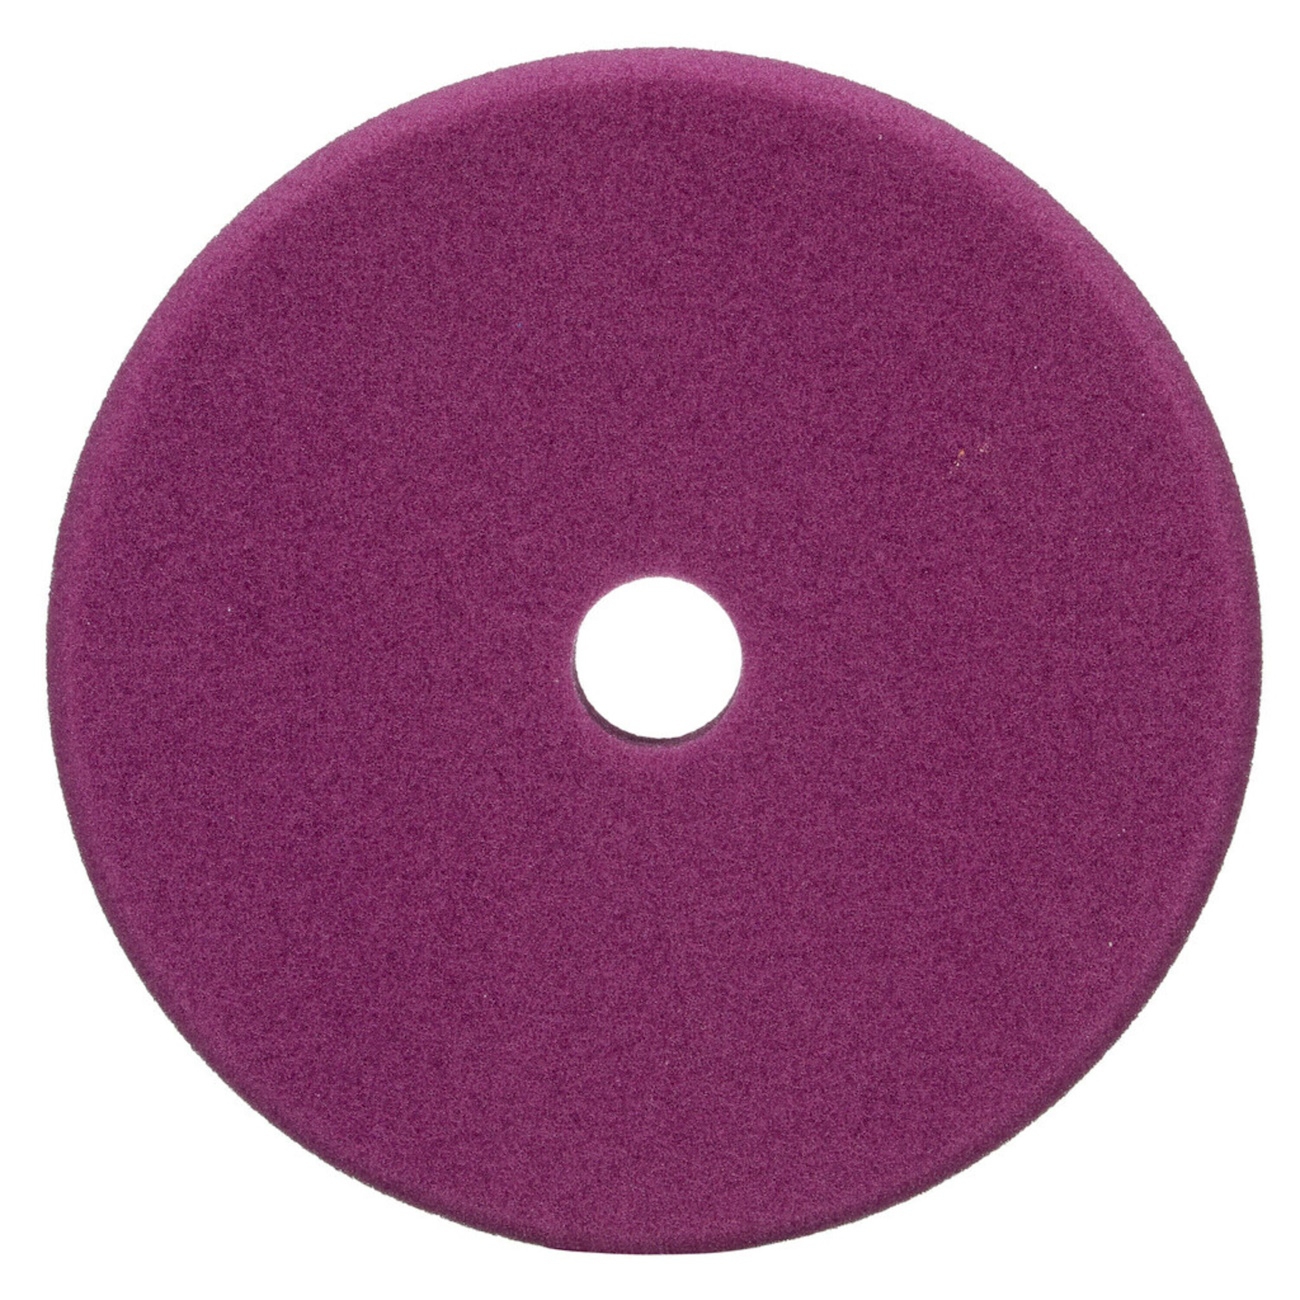 3M Perfect-it Feines Schaum-Polierpad für Exzenterpoliermaschine, violett, 130 mm, 34123 (Pack = 2 Stück)